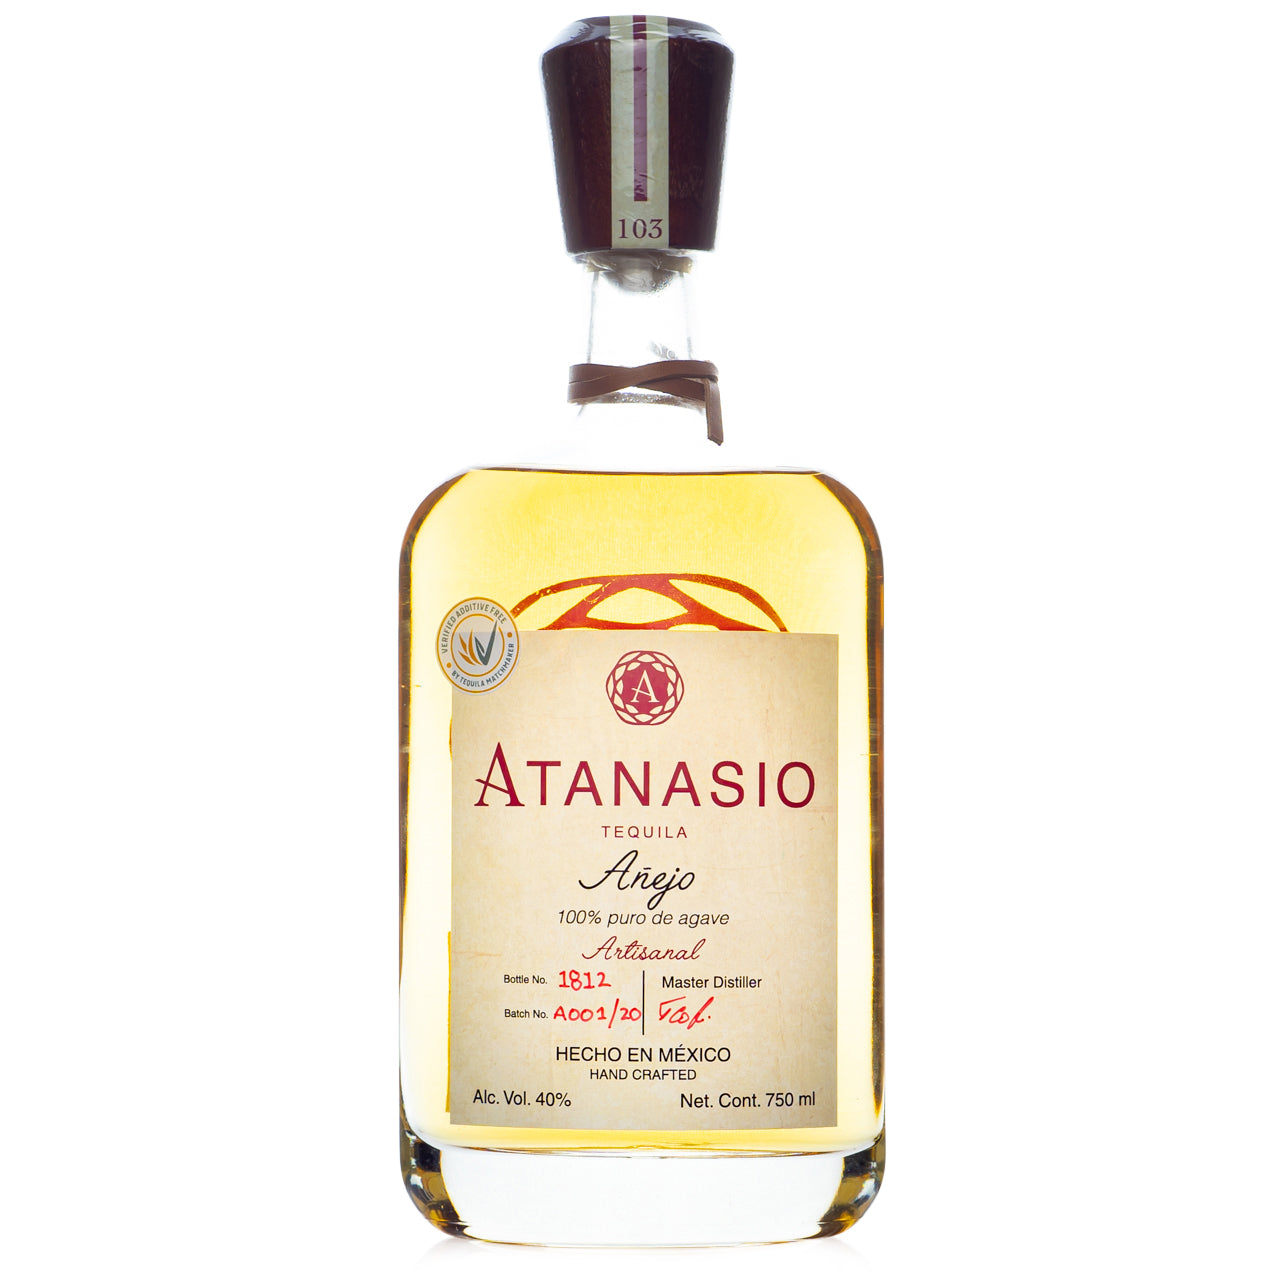 Atanasio Artisanal Anejo Tequila